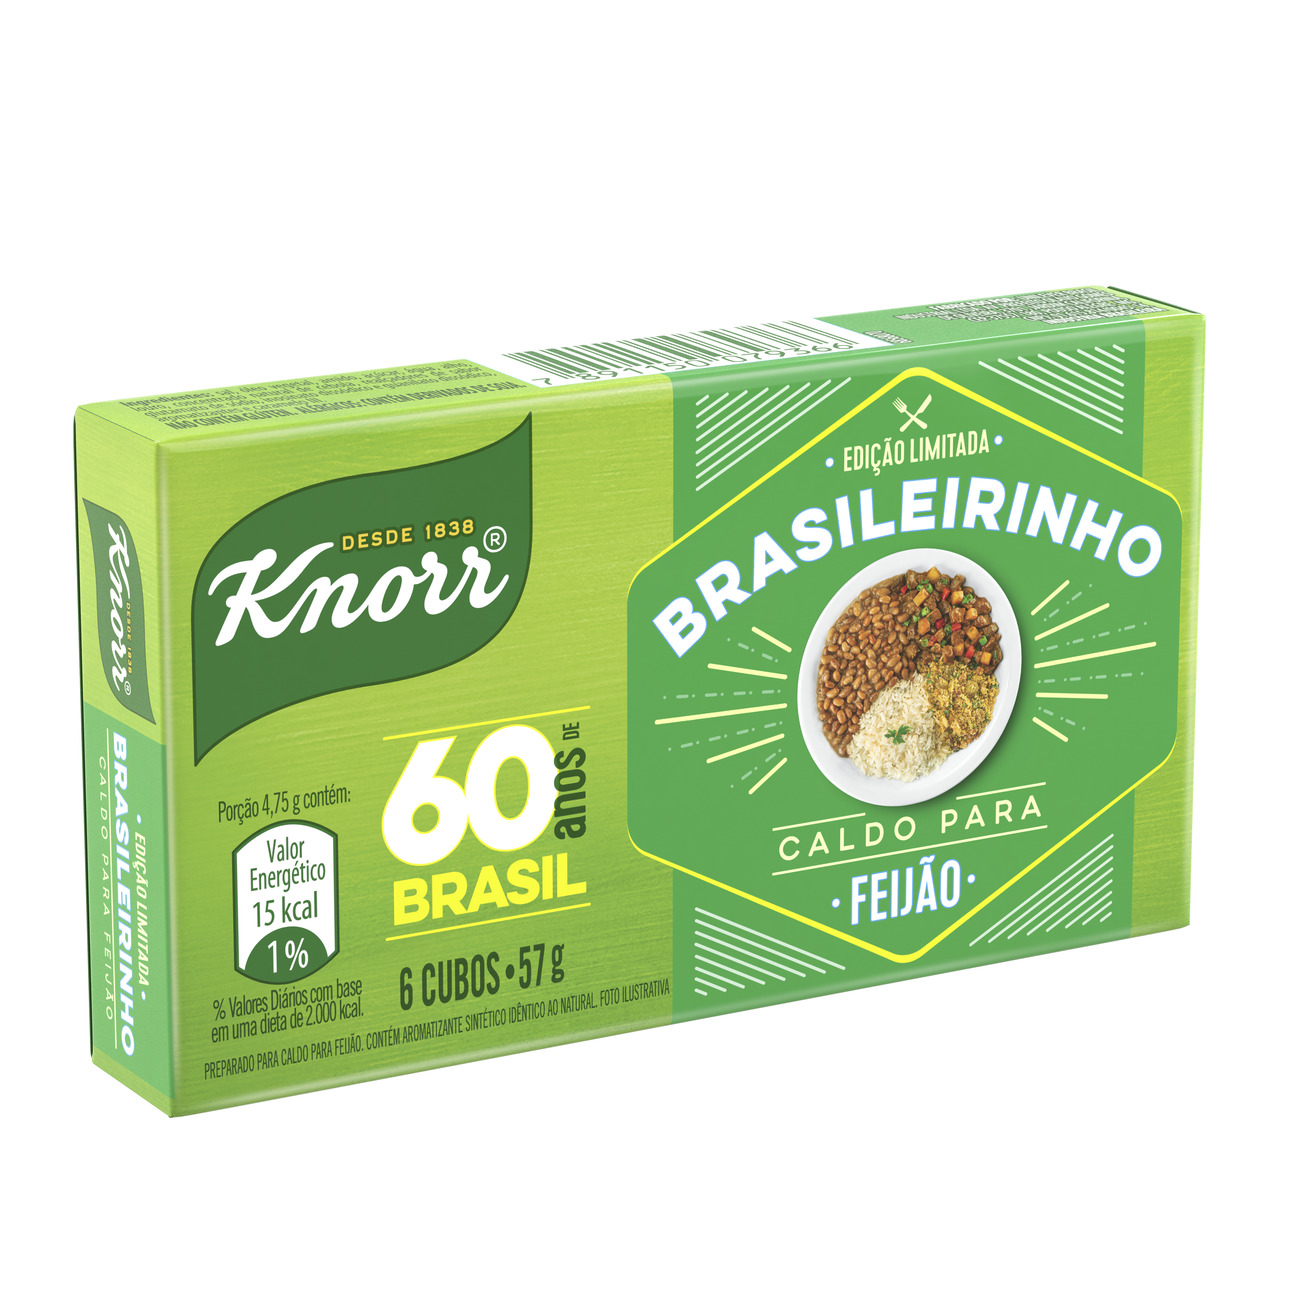 Caldo em Tablete para Feijo Knorr 57g 6 Unidades Edio Limitada Brasileirinho